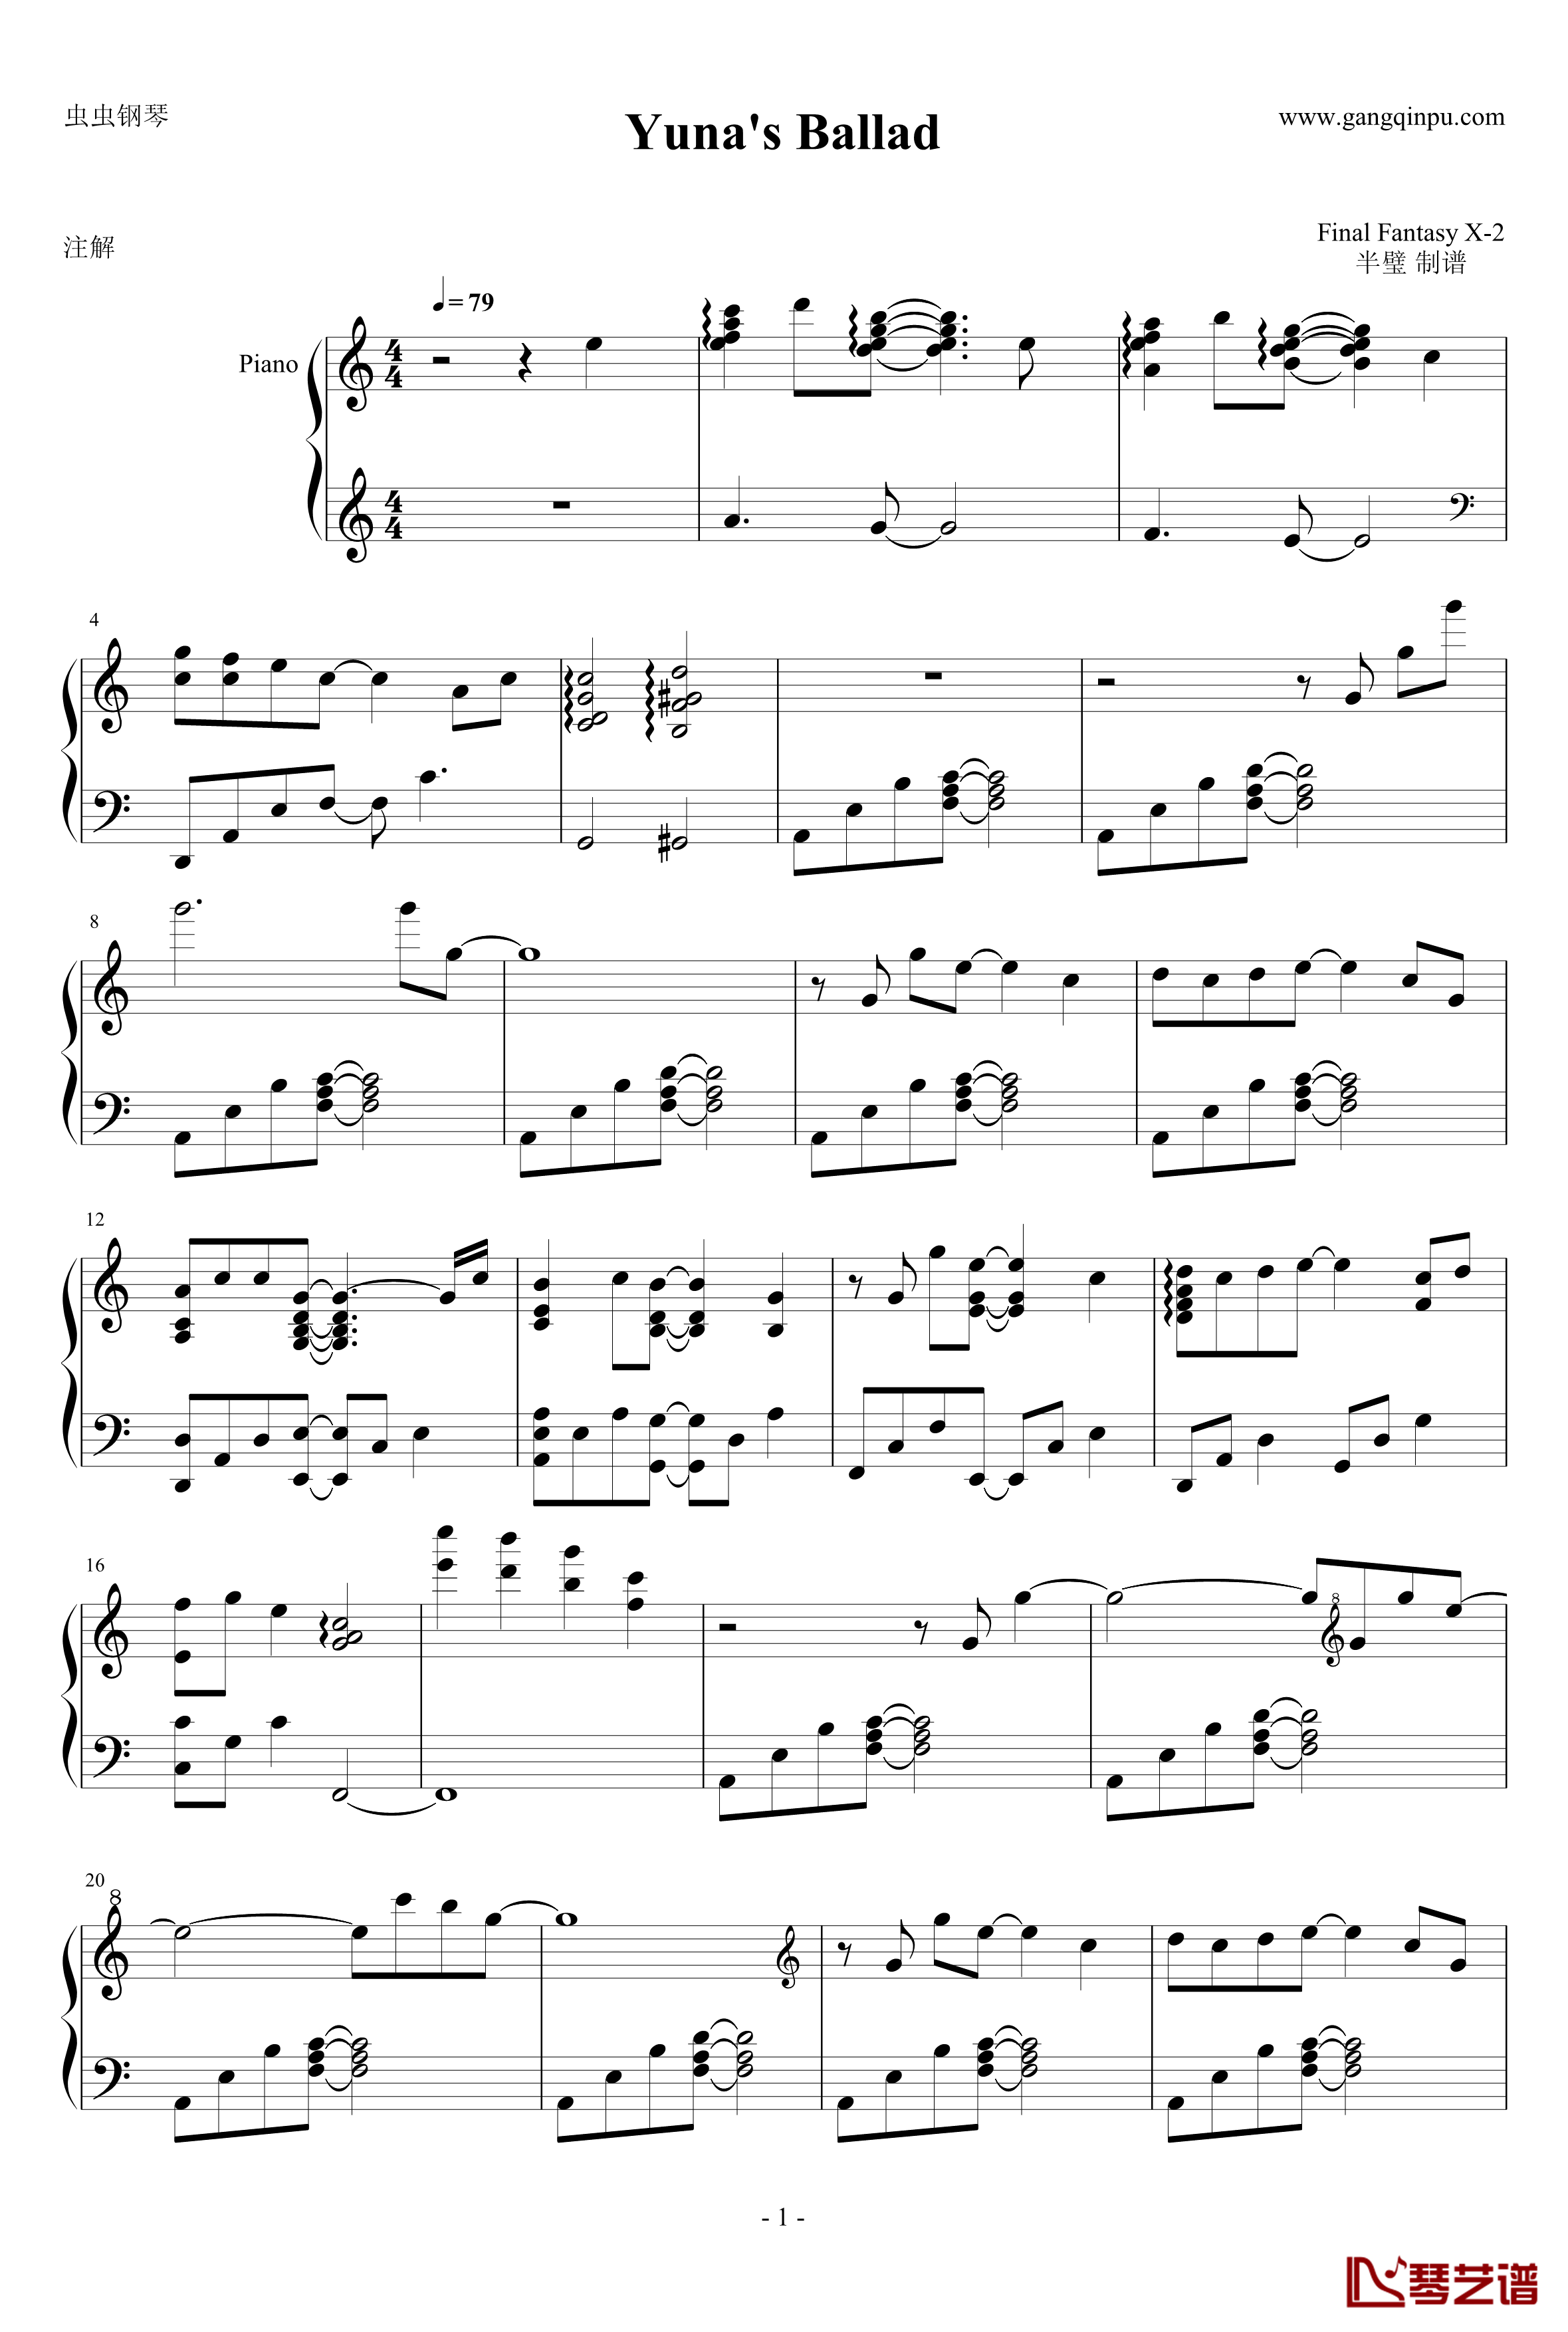 Yunas Ballad钢琴谱 - 最终幻想121